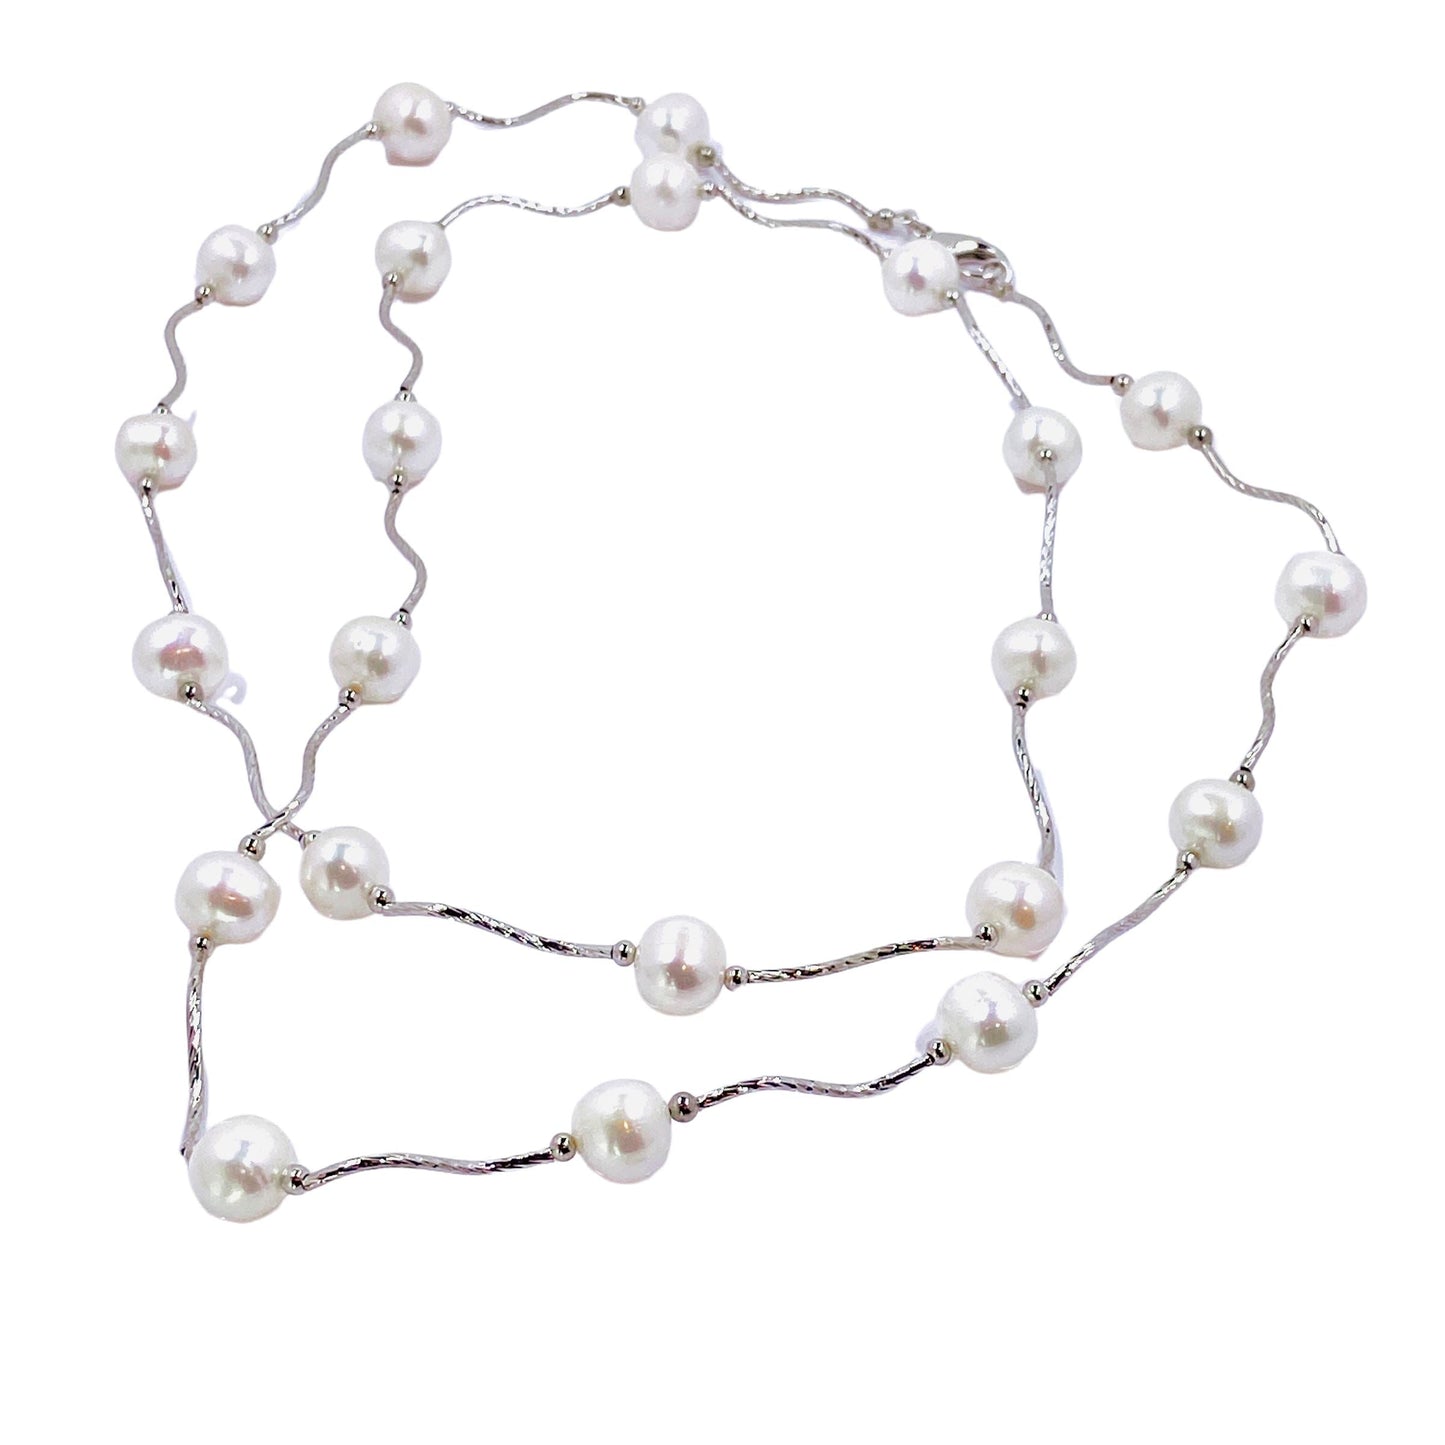 Lima Pearl Necklace Necklaces Trendzio 